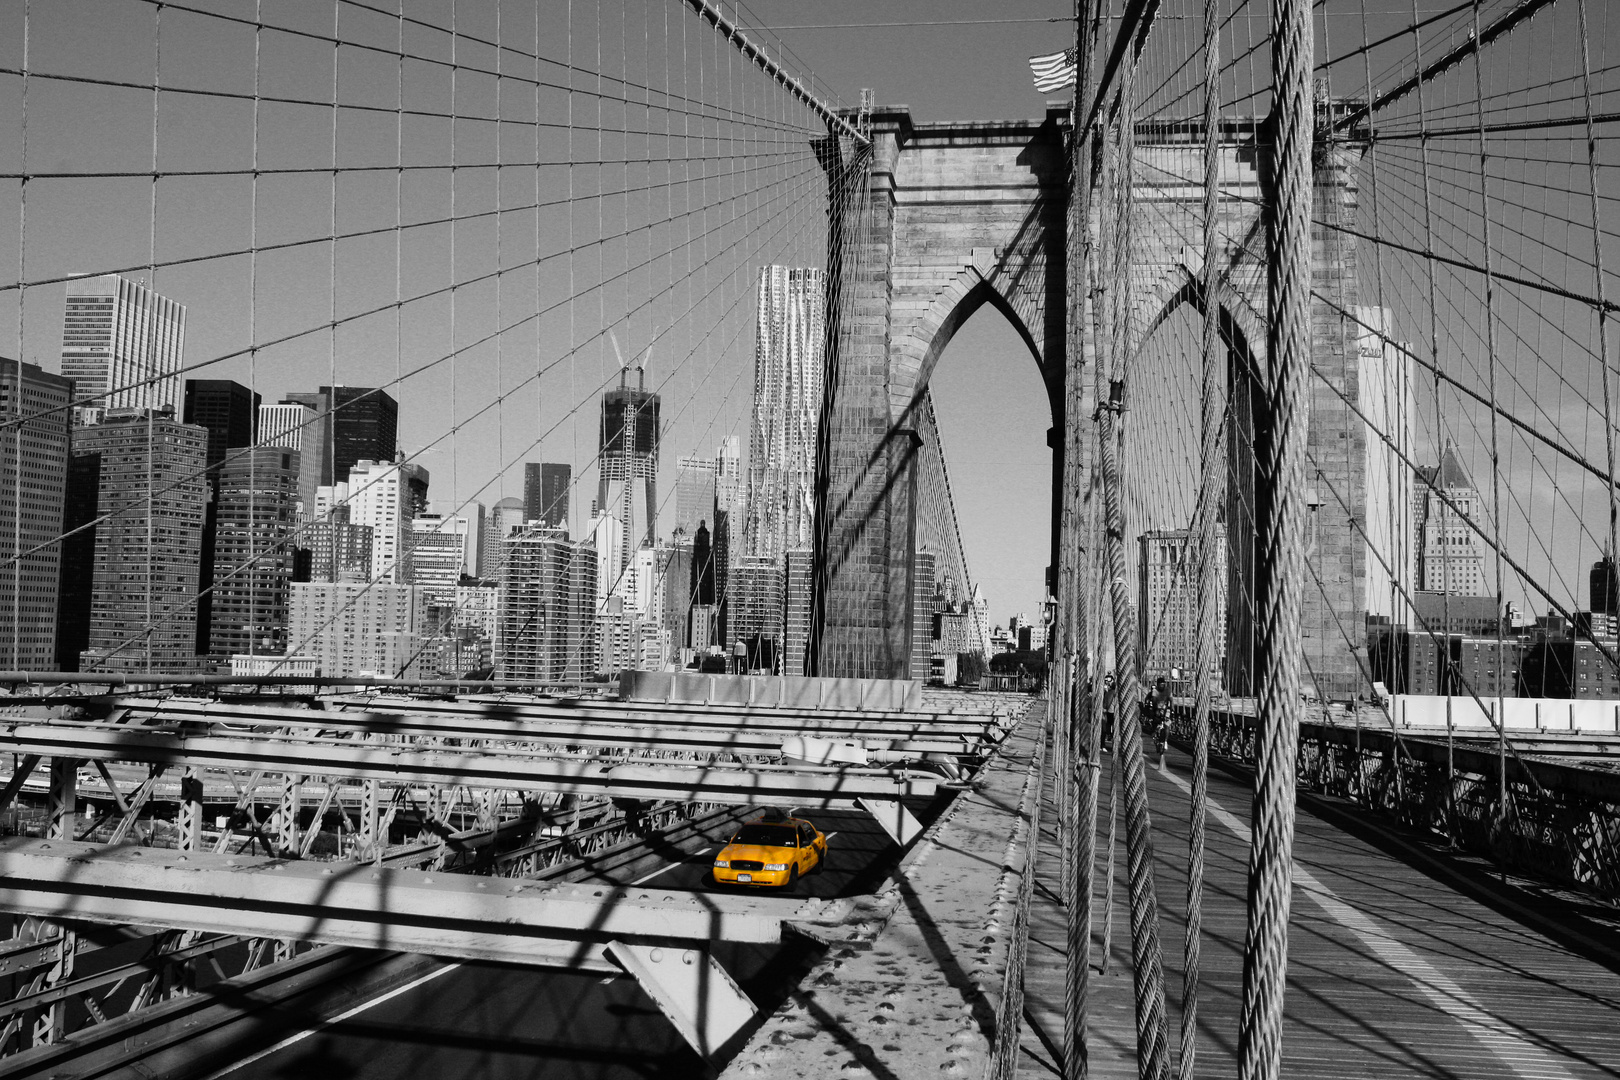 Brooklyn Bridge Yellow Cap